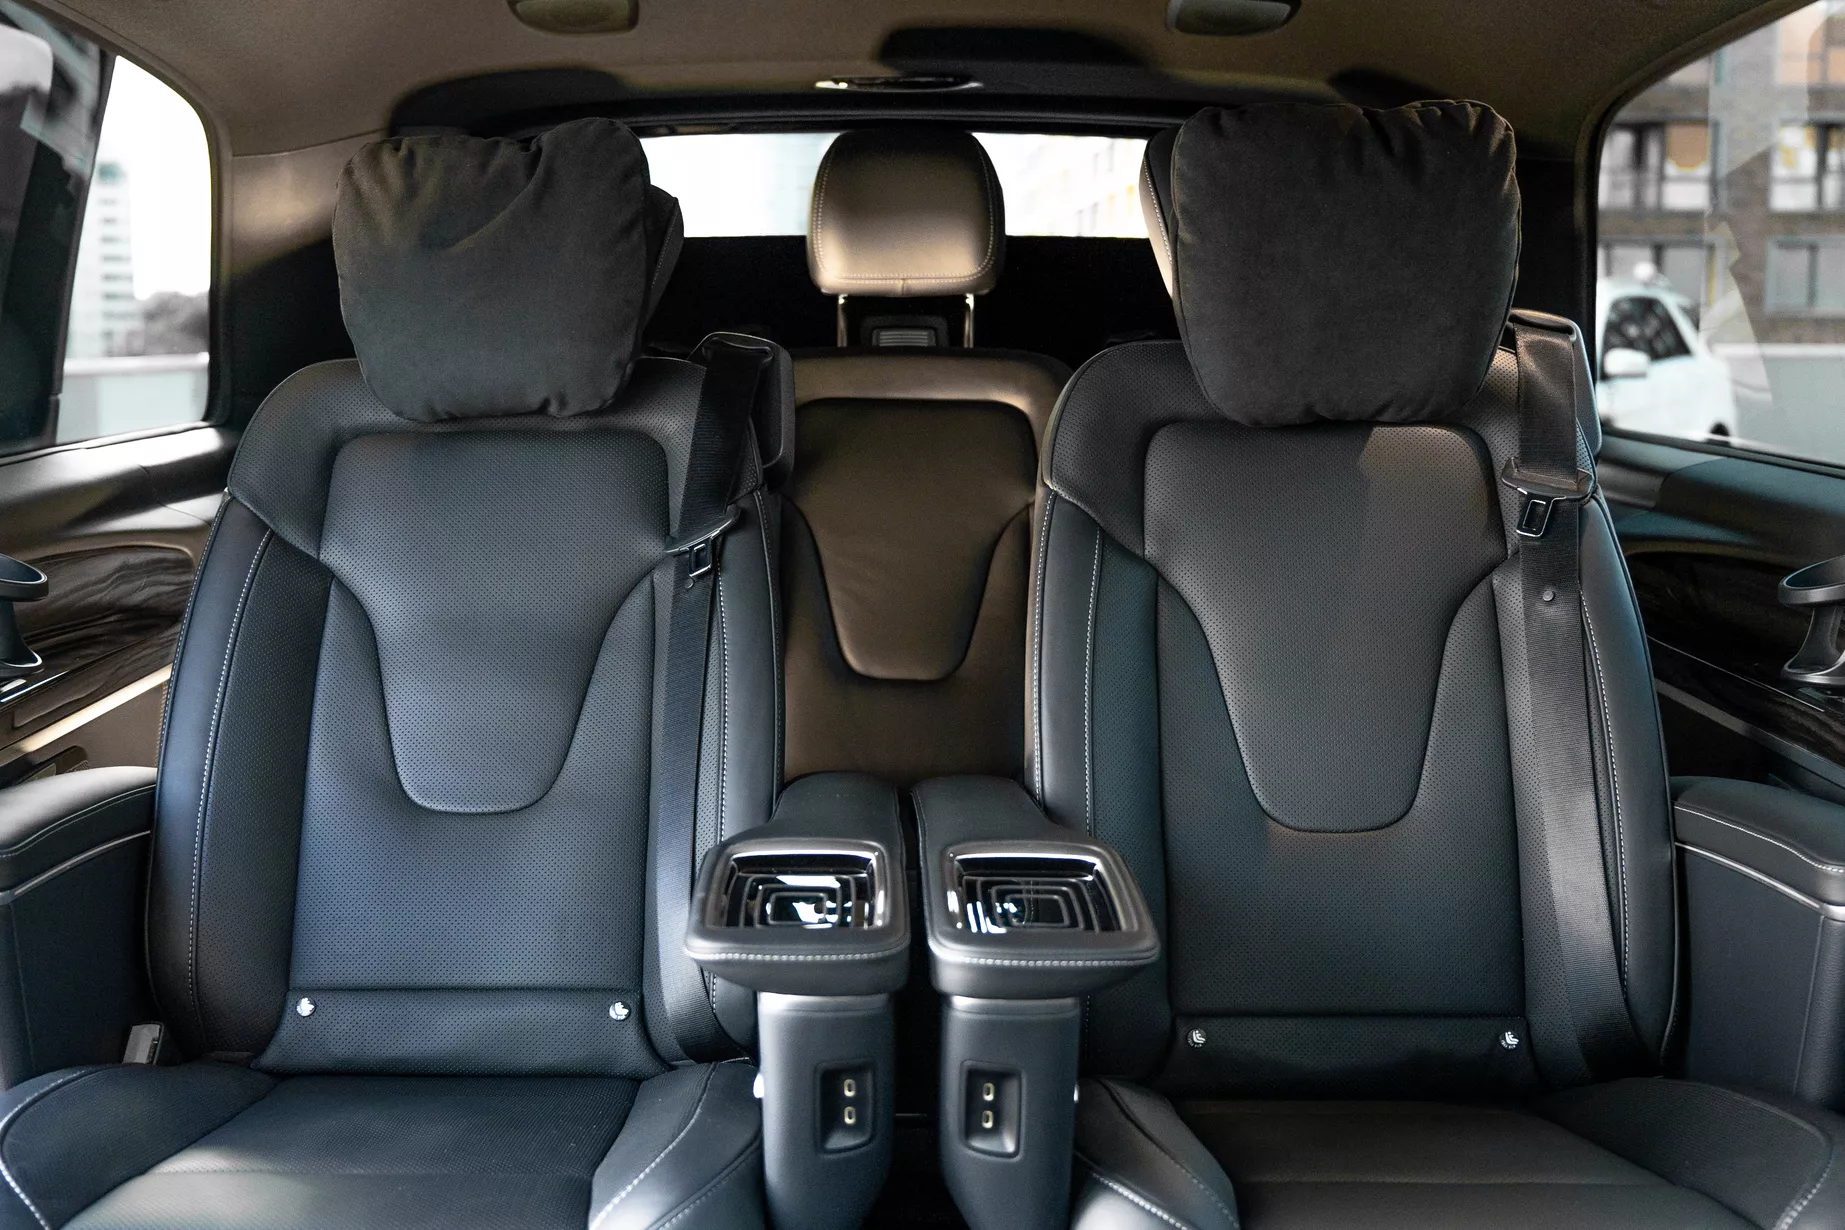 Mercedes V-класс: роскошь и комфорт для вашей поездки